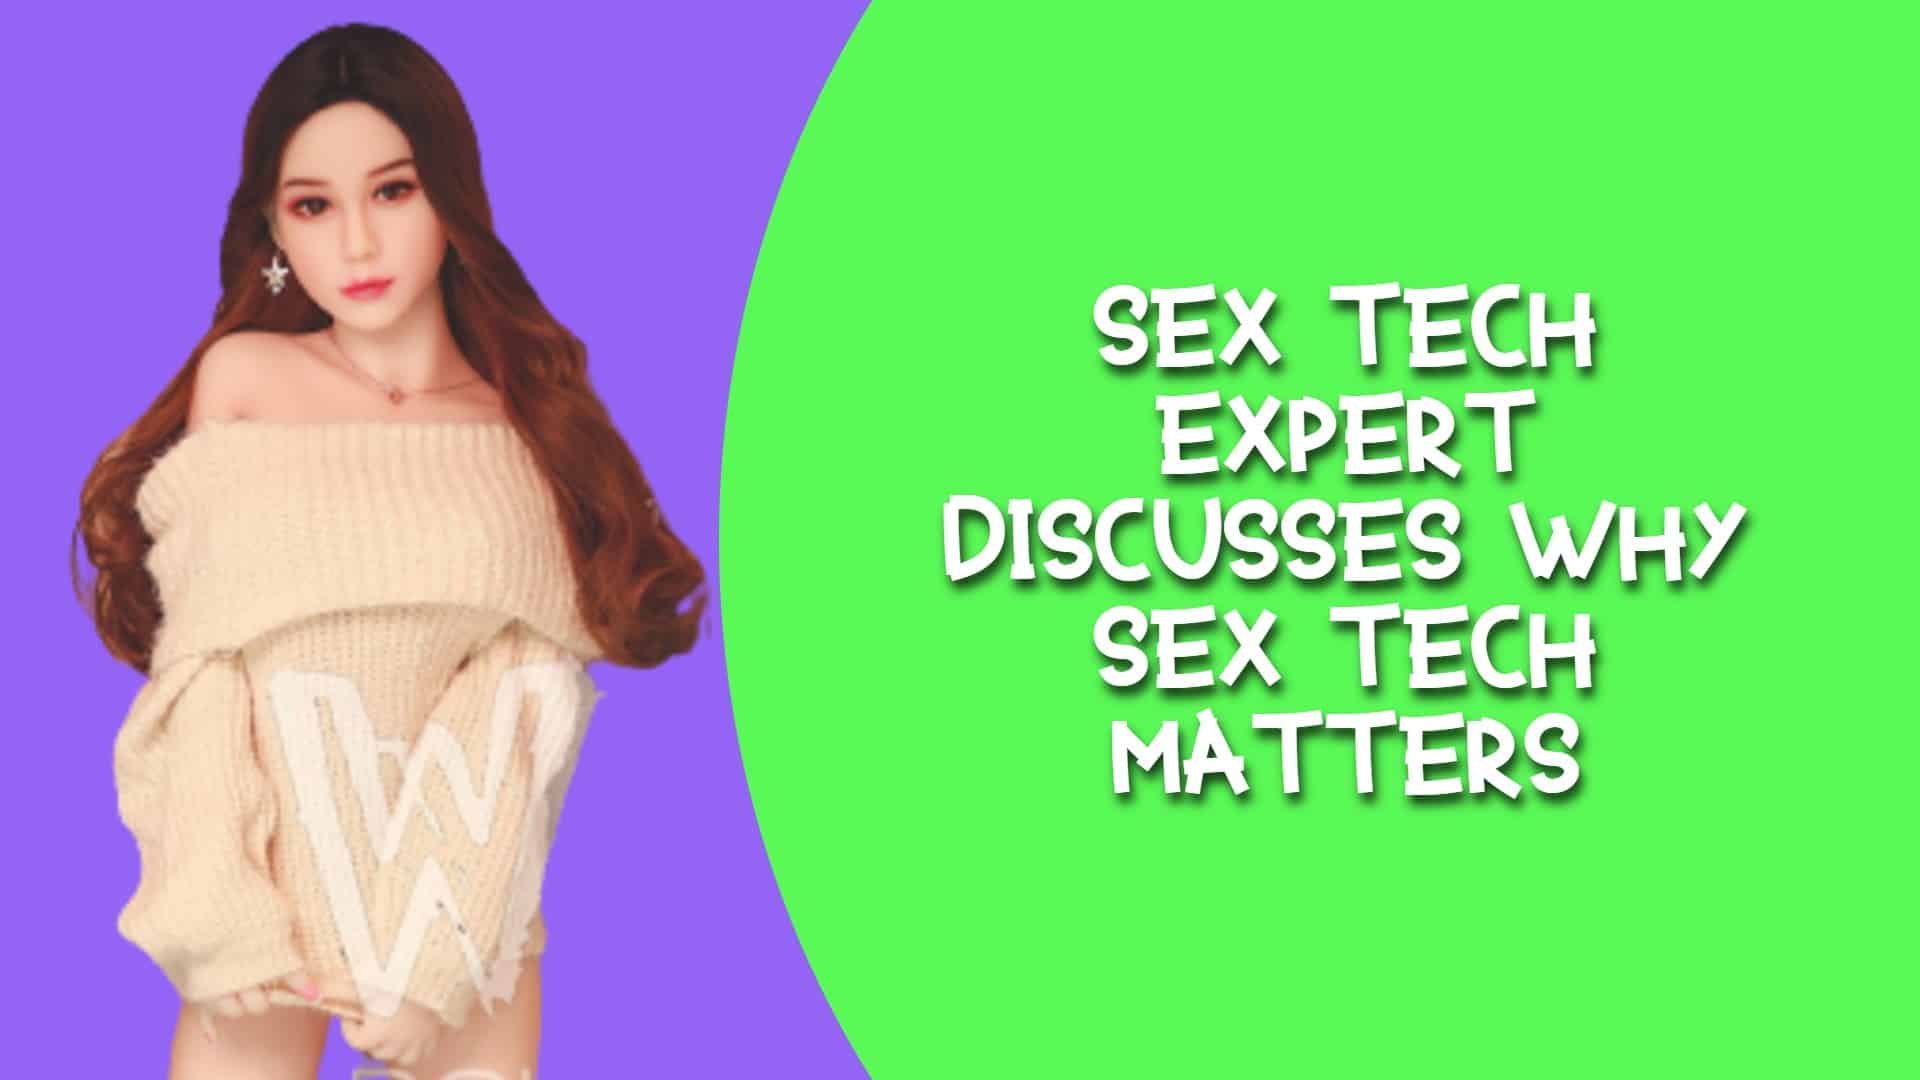 Sex Tech Expert Discusses Why Sex Tech Matters